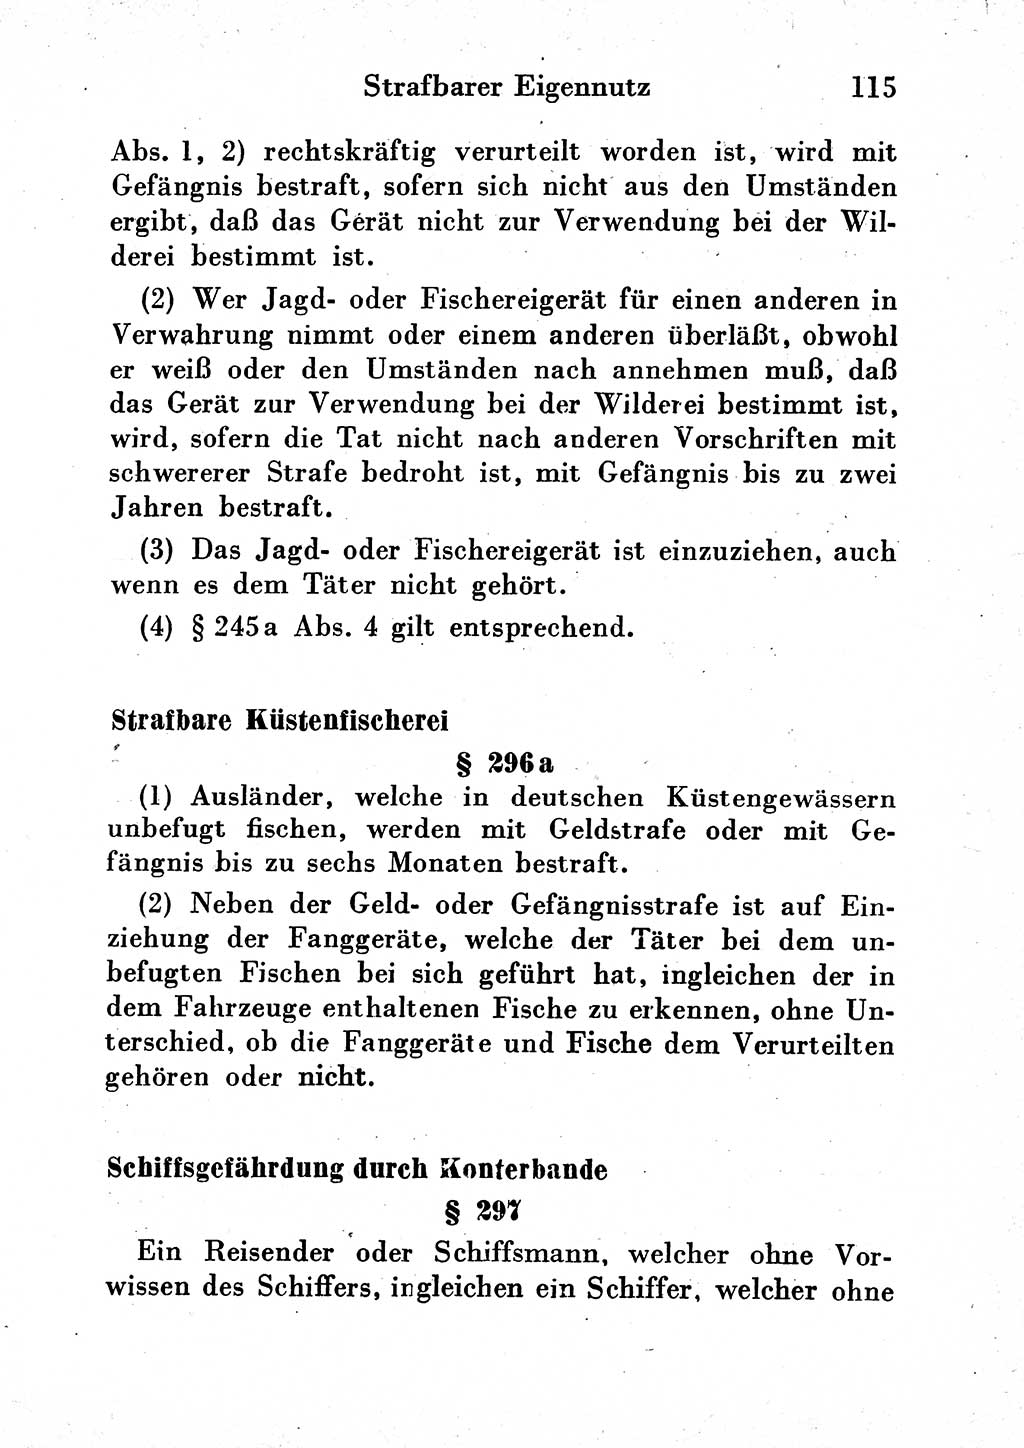 Strafgesetzbuch (StGB) und andere Strafgesetze [Deutsche Demokratische Republik (DDR)] 1954, Seite 115 (StGB Strafges. DDR 1954, S. 115)